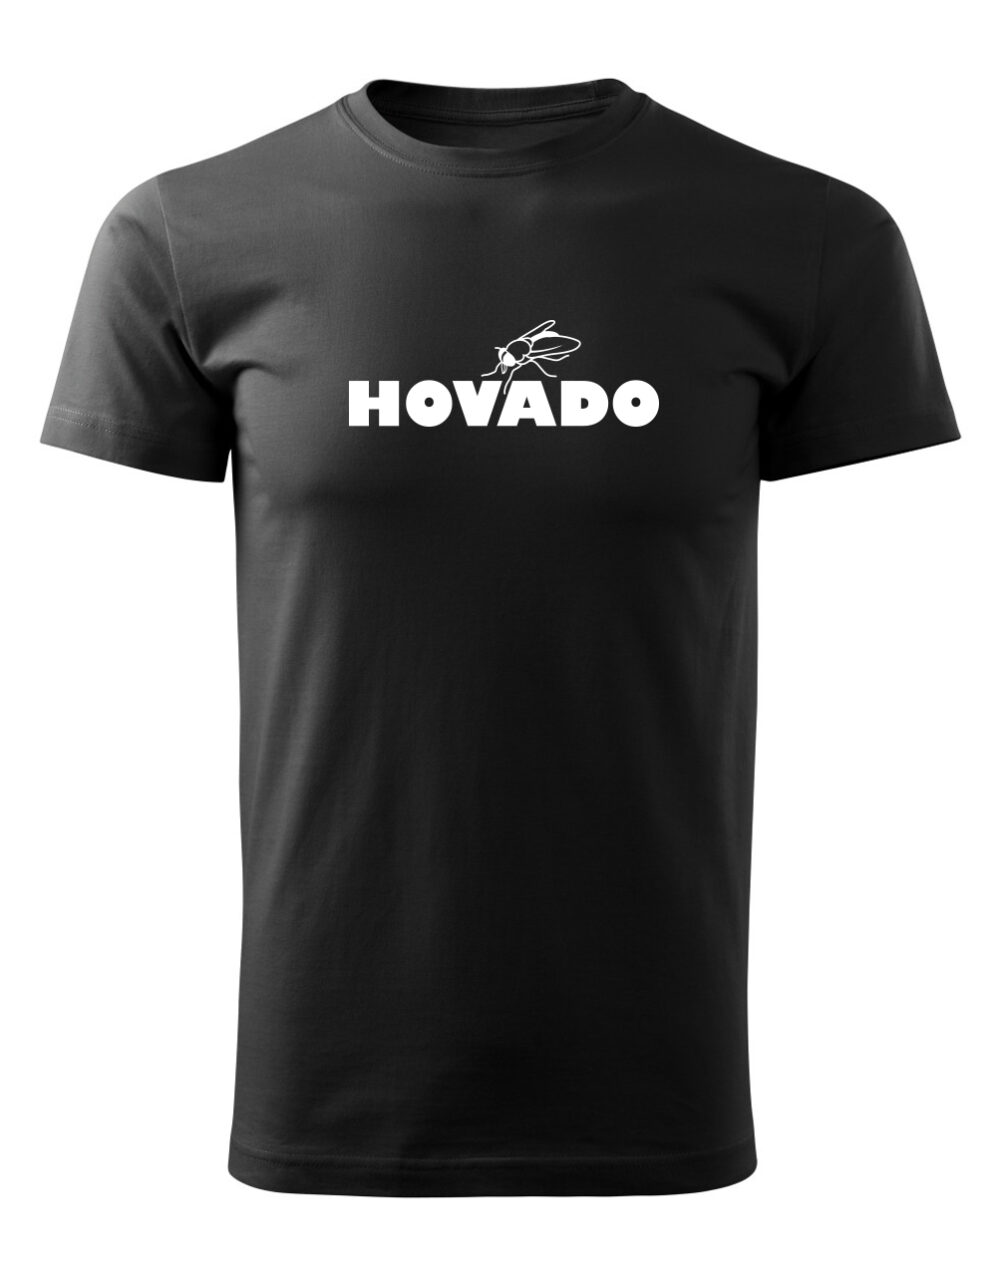 Pánské tričko s potiskem Hovado černá